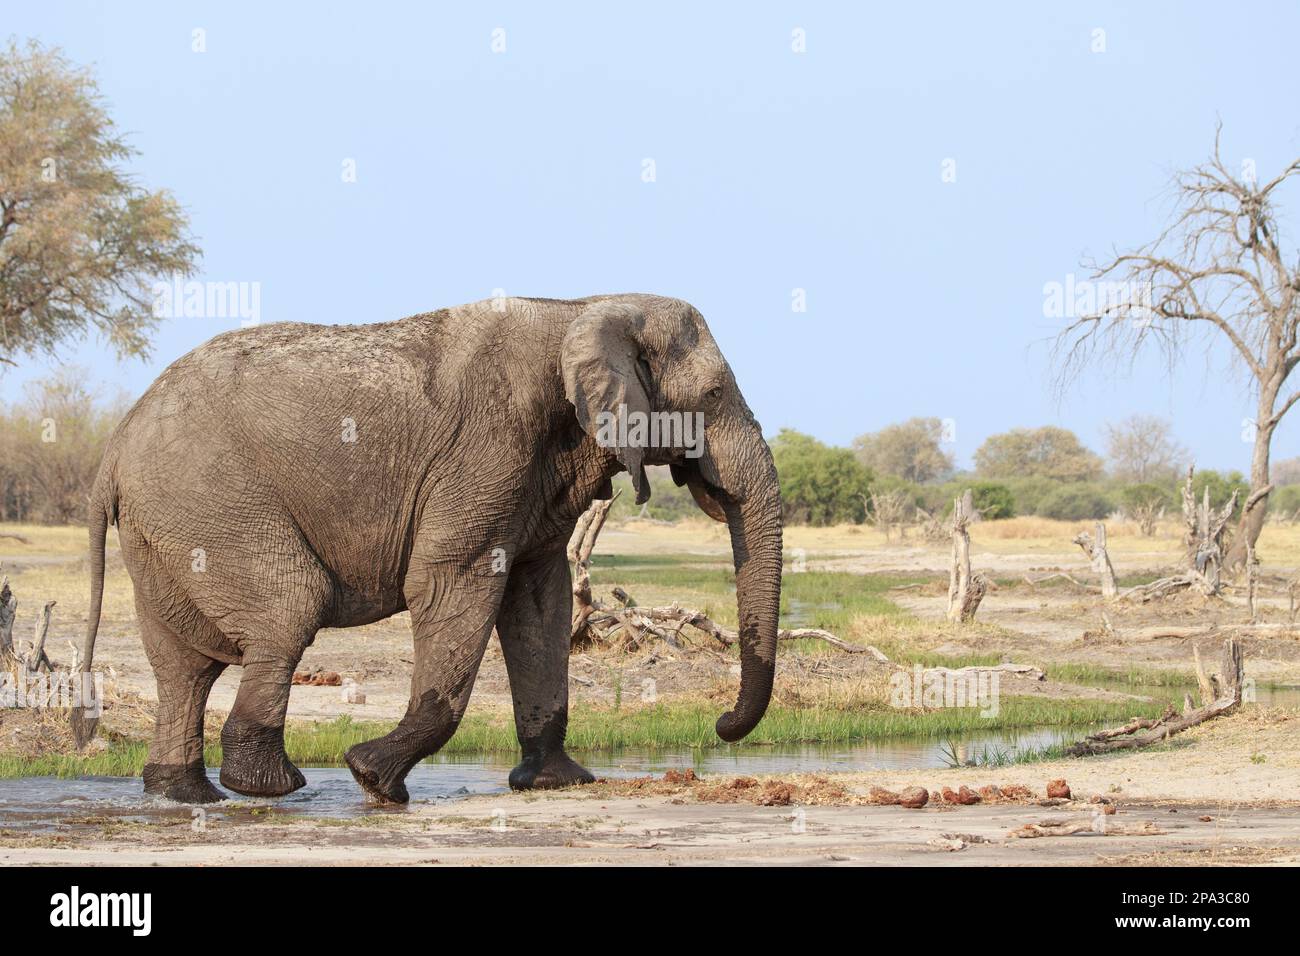 Elefant, Loxodonta africana, Kreuzung von links nach rechts. Hinter wilden Tieren befindet sich afrikanisches Buschland. Okavango Delta, Botsuana, Afrika Stockfoto